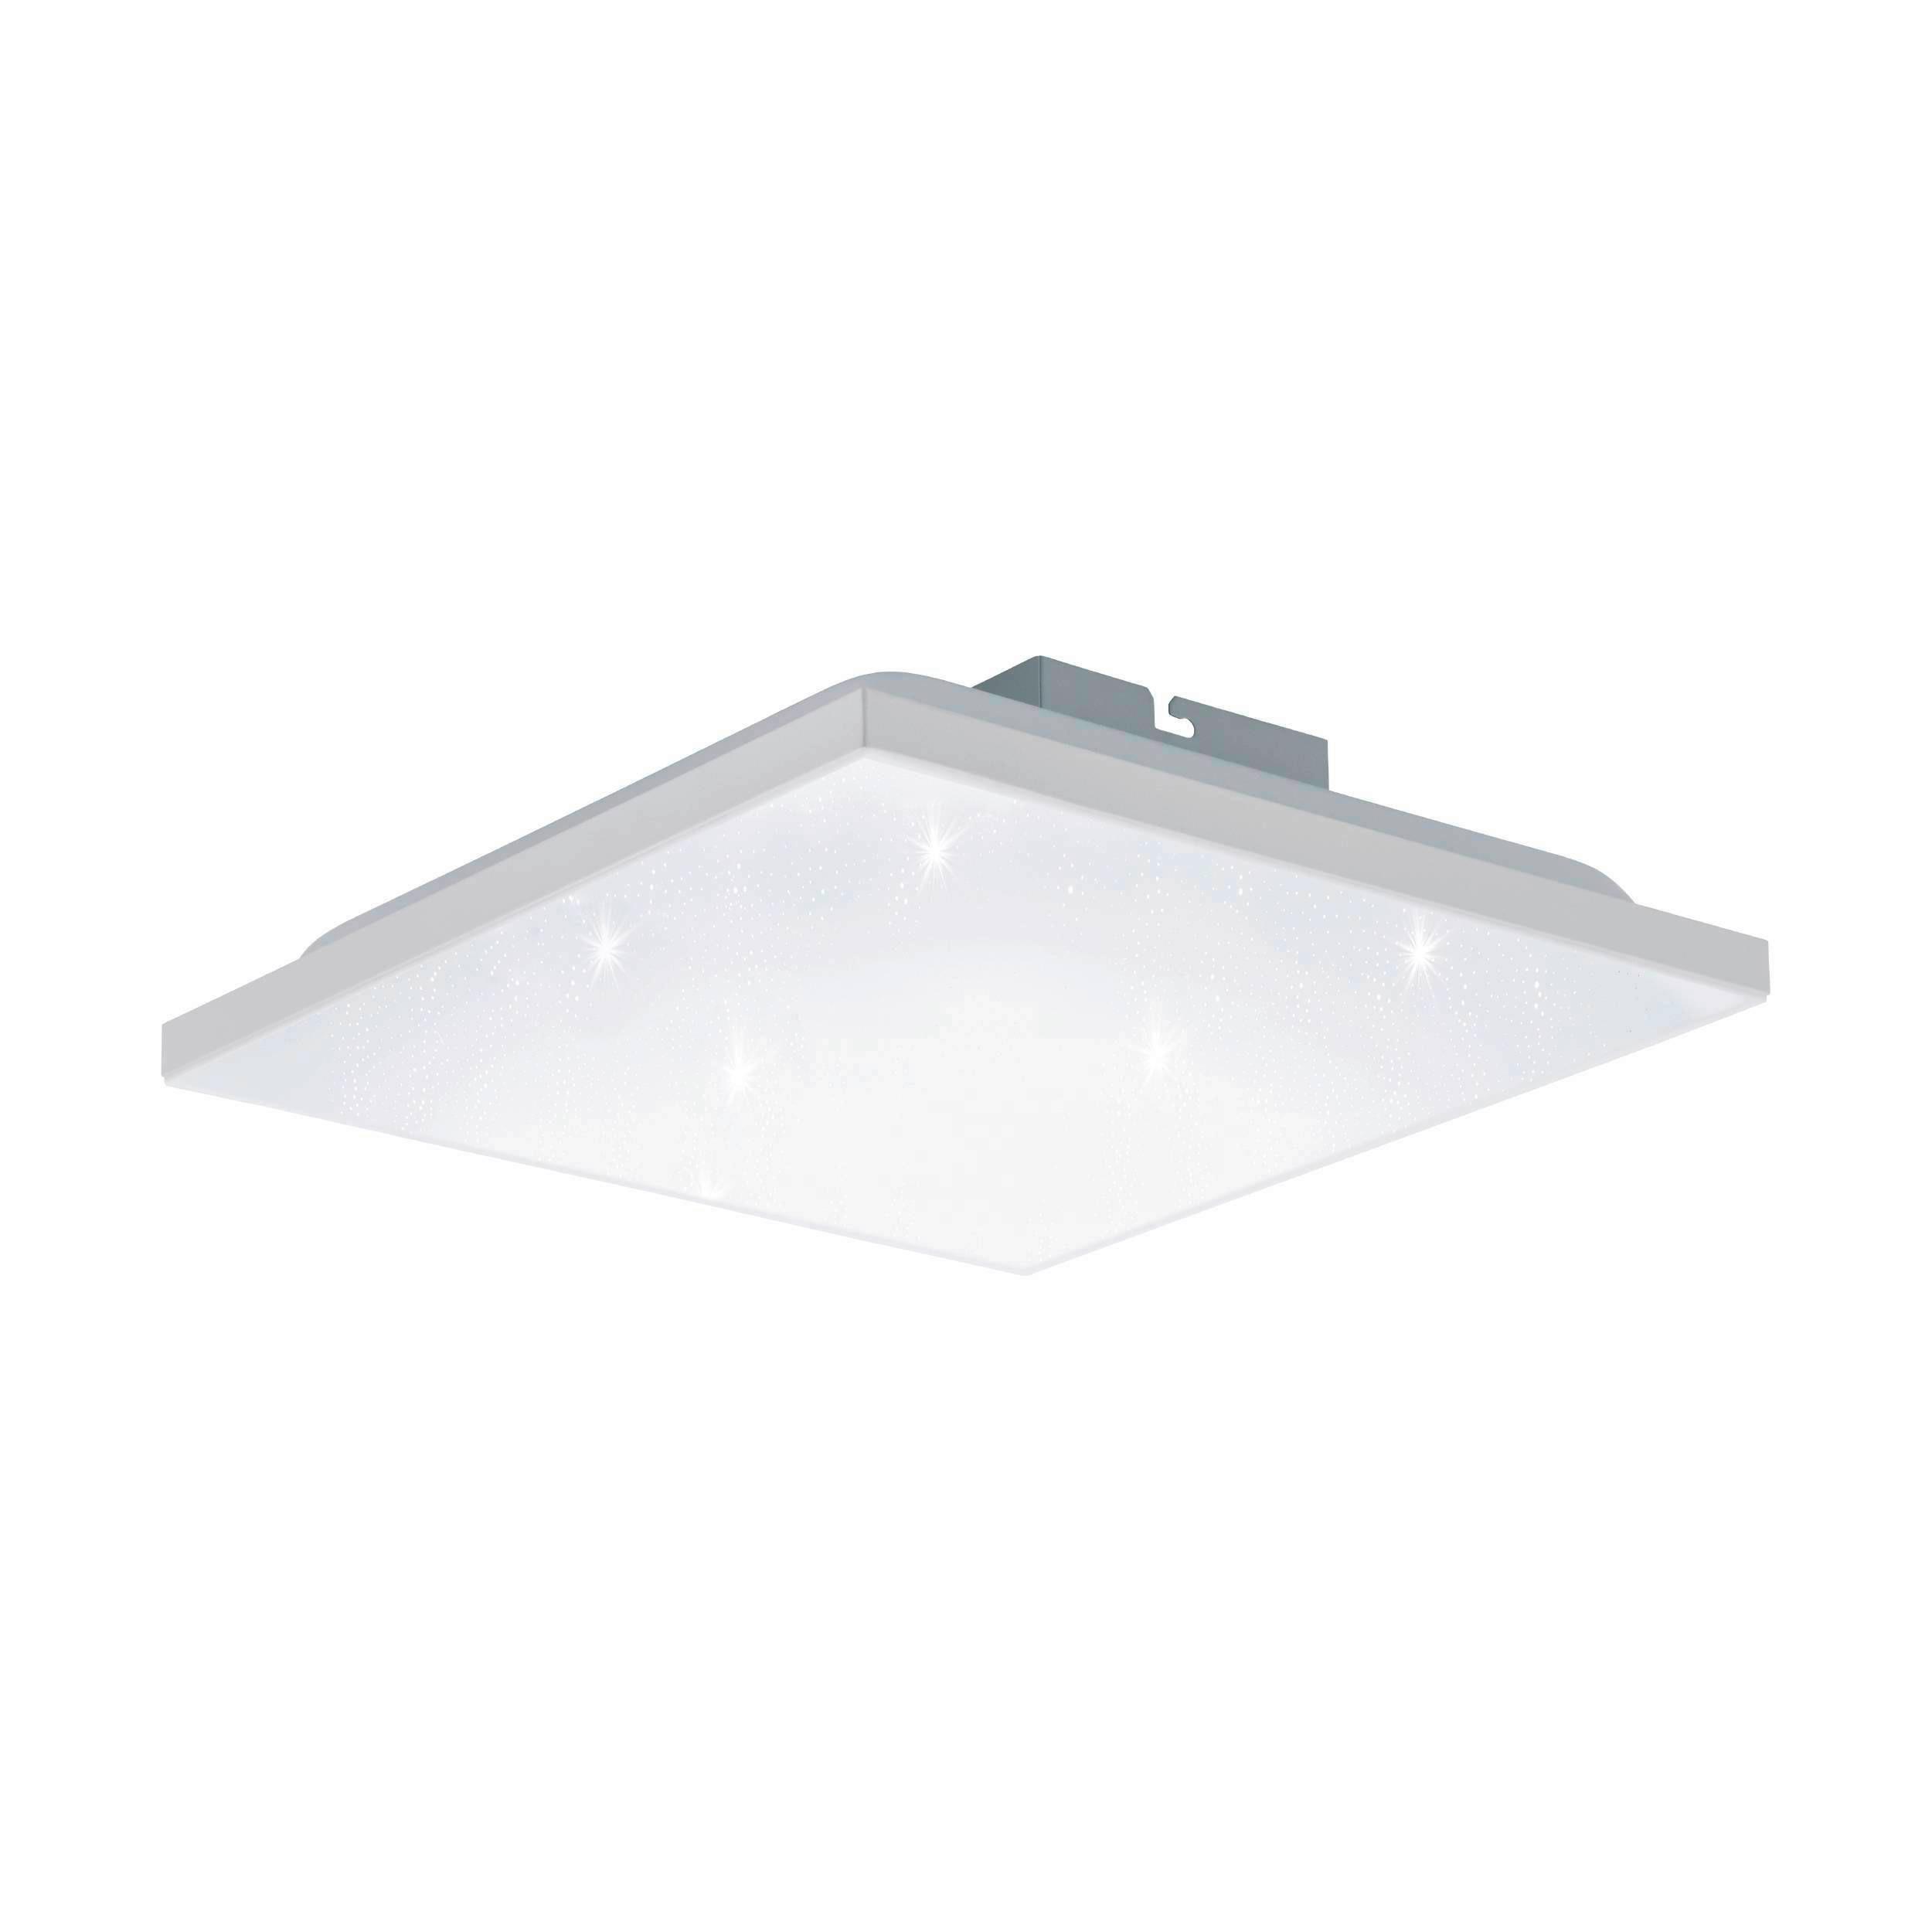 LED-Deckenleuchte Calemar-S L: 28,7 cm, mit Kristalleffekt - Weiß, Basics, Kunststoff/Metall (28,7/28,7/6,2cm)